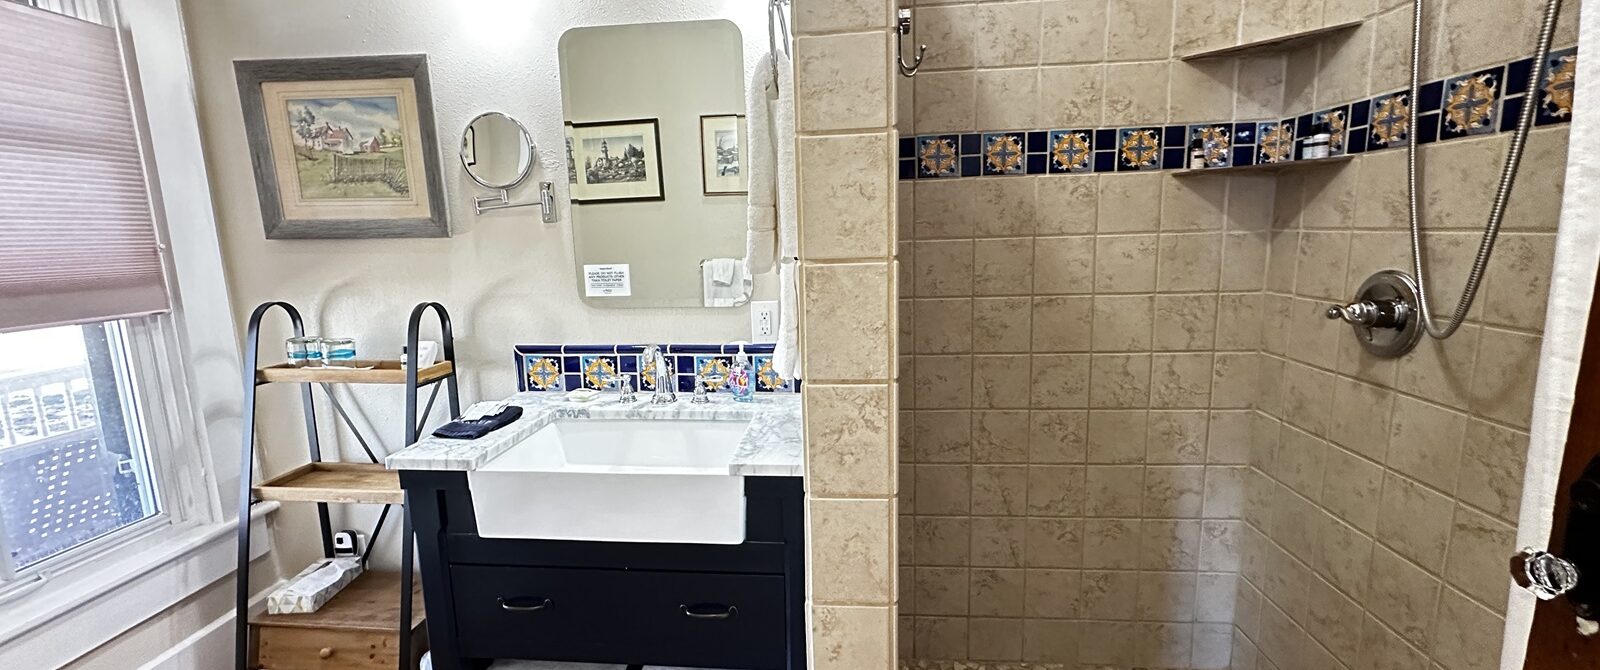 bathroom with large vanity, walk-in shower, mirror, art, shelving, towels